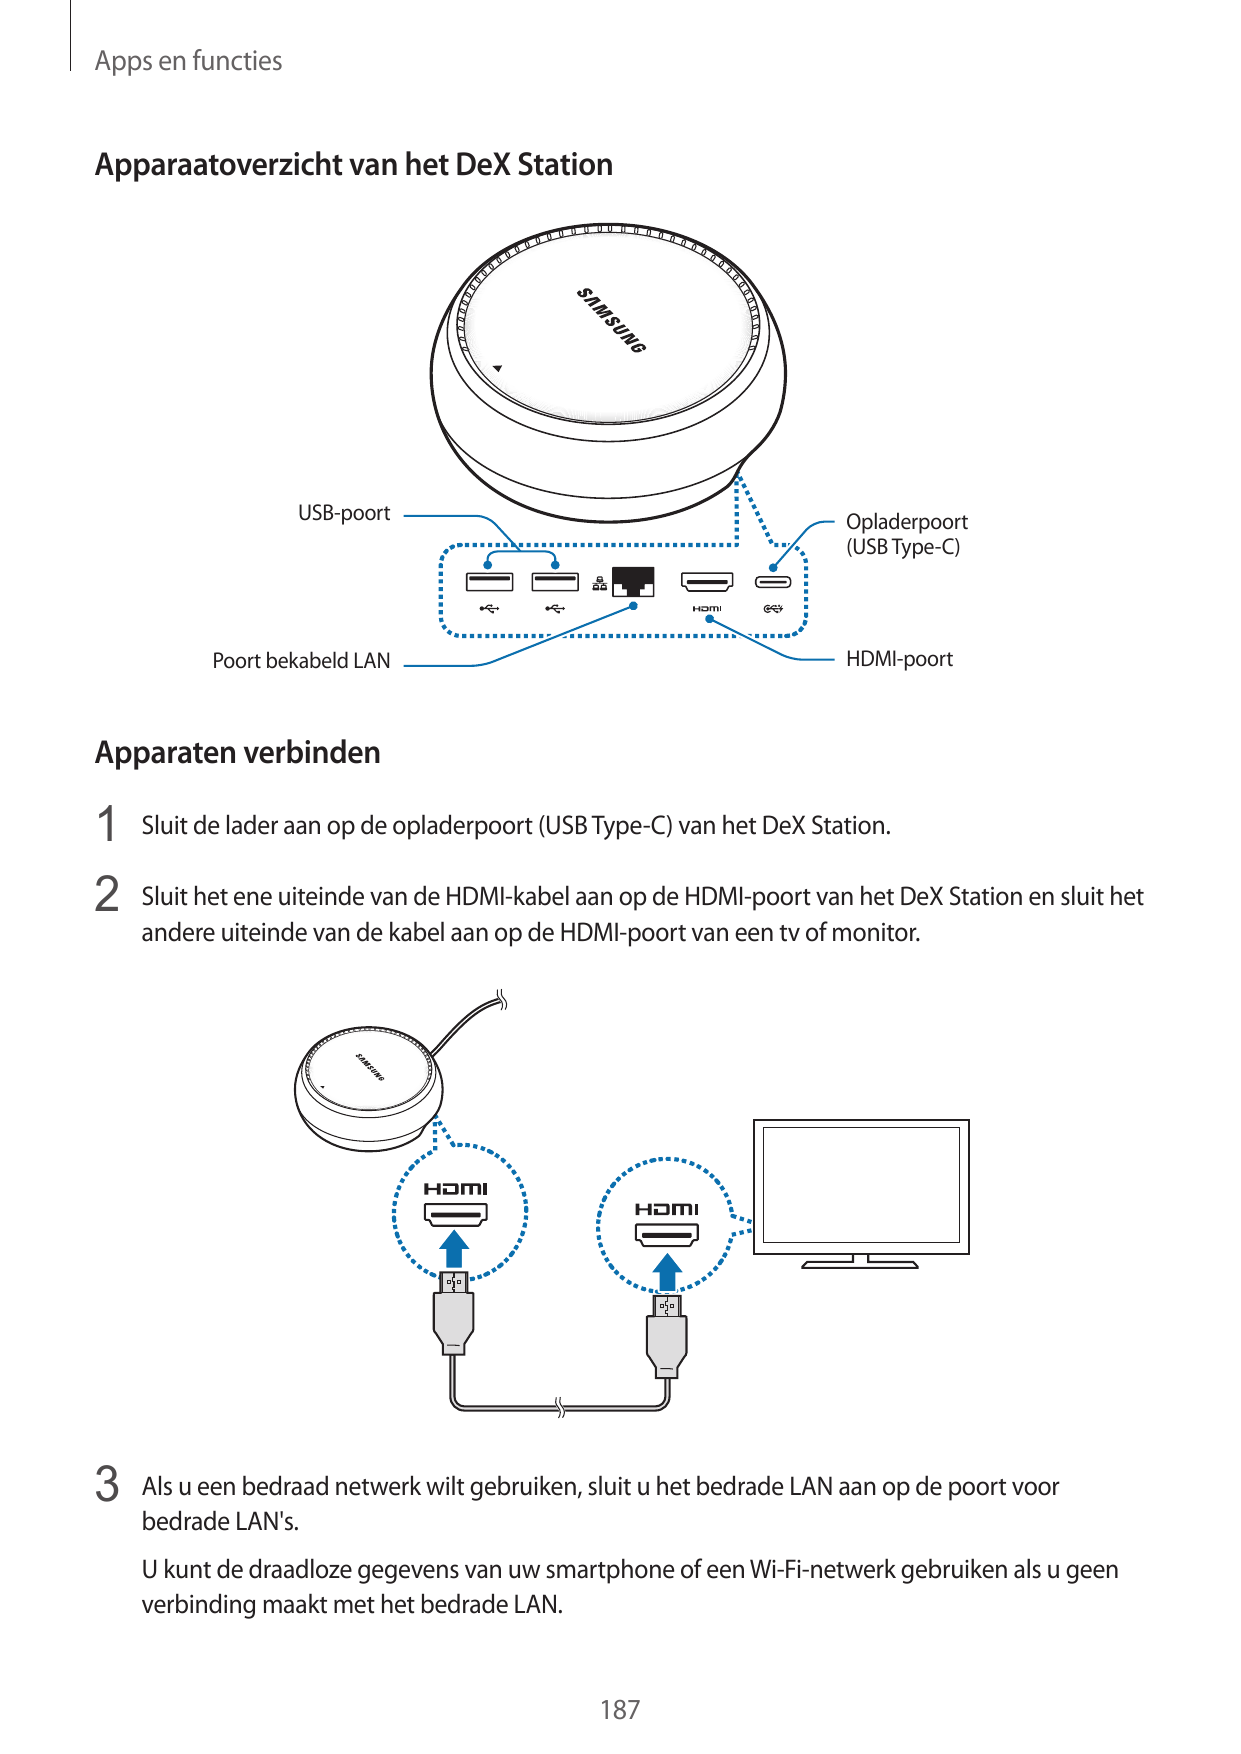 Apps en functiesApparaatoverzicht van het DeX StationUSB-poortOpladerpoort(USB Type-C)HDMI-poortPoort bekabeld LANApparaten verb